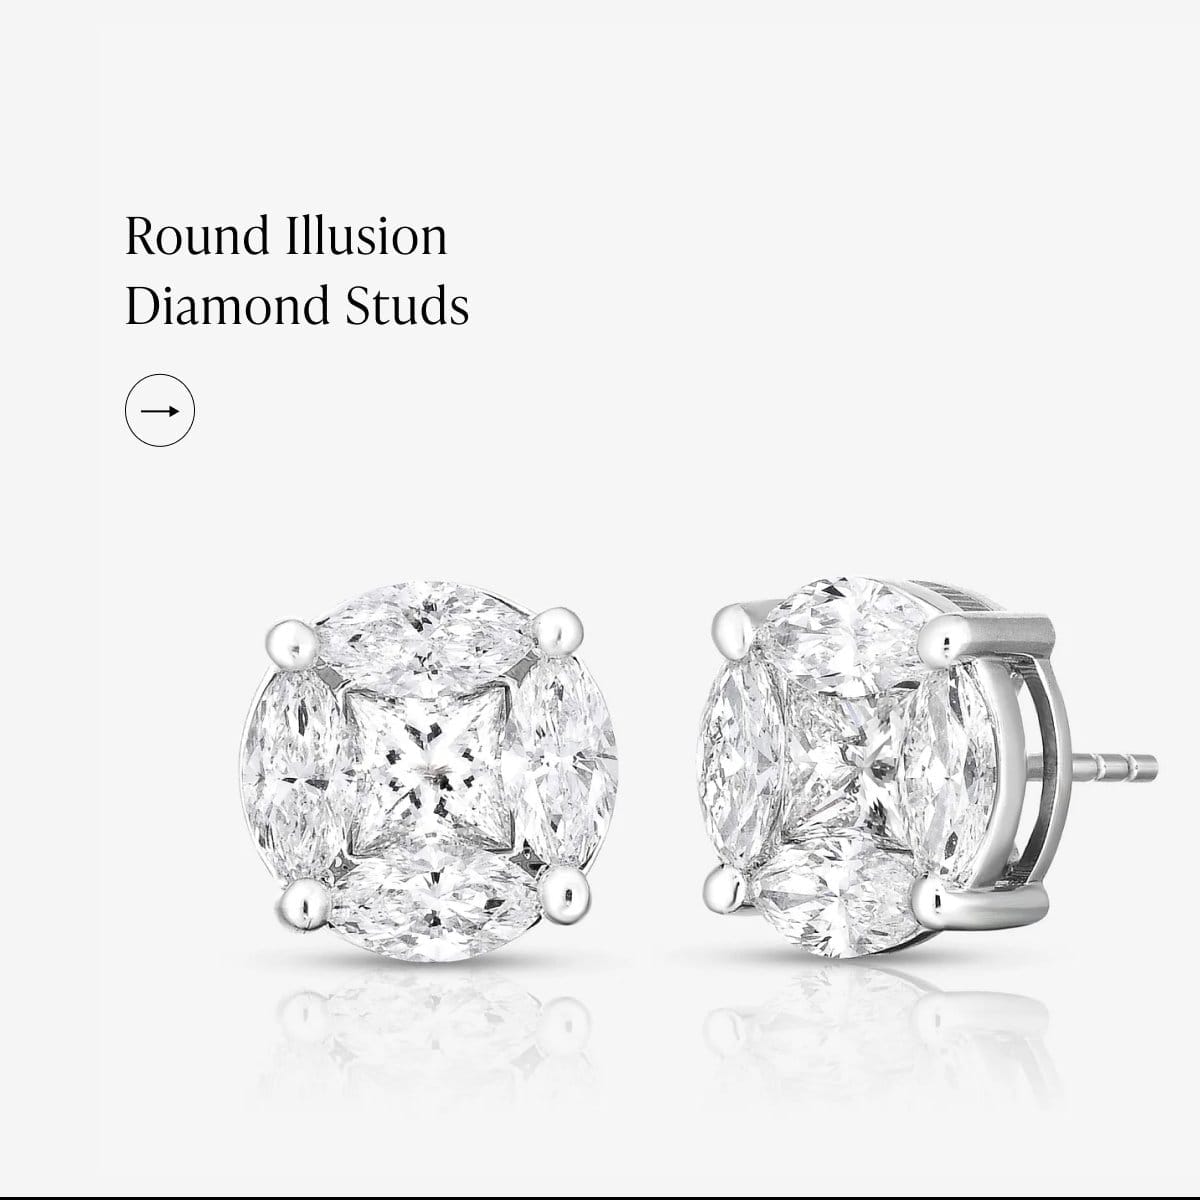 Round Illusion Diamond Studs